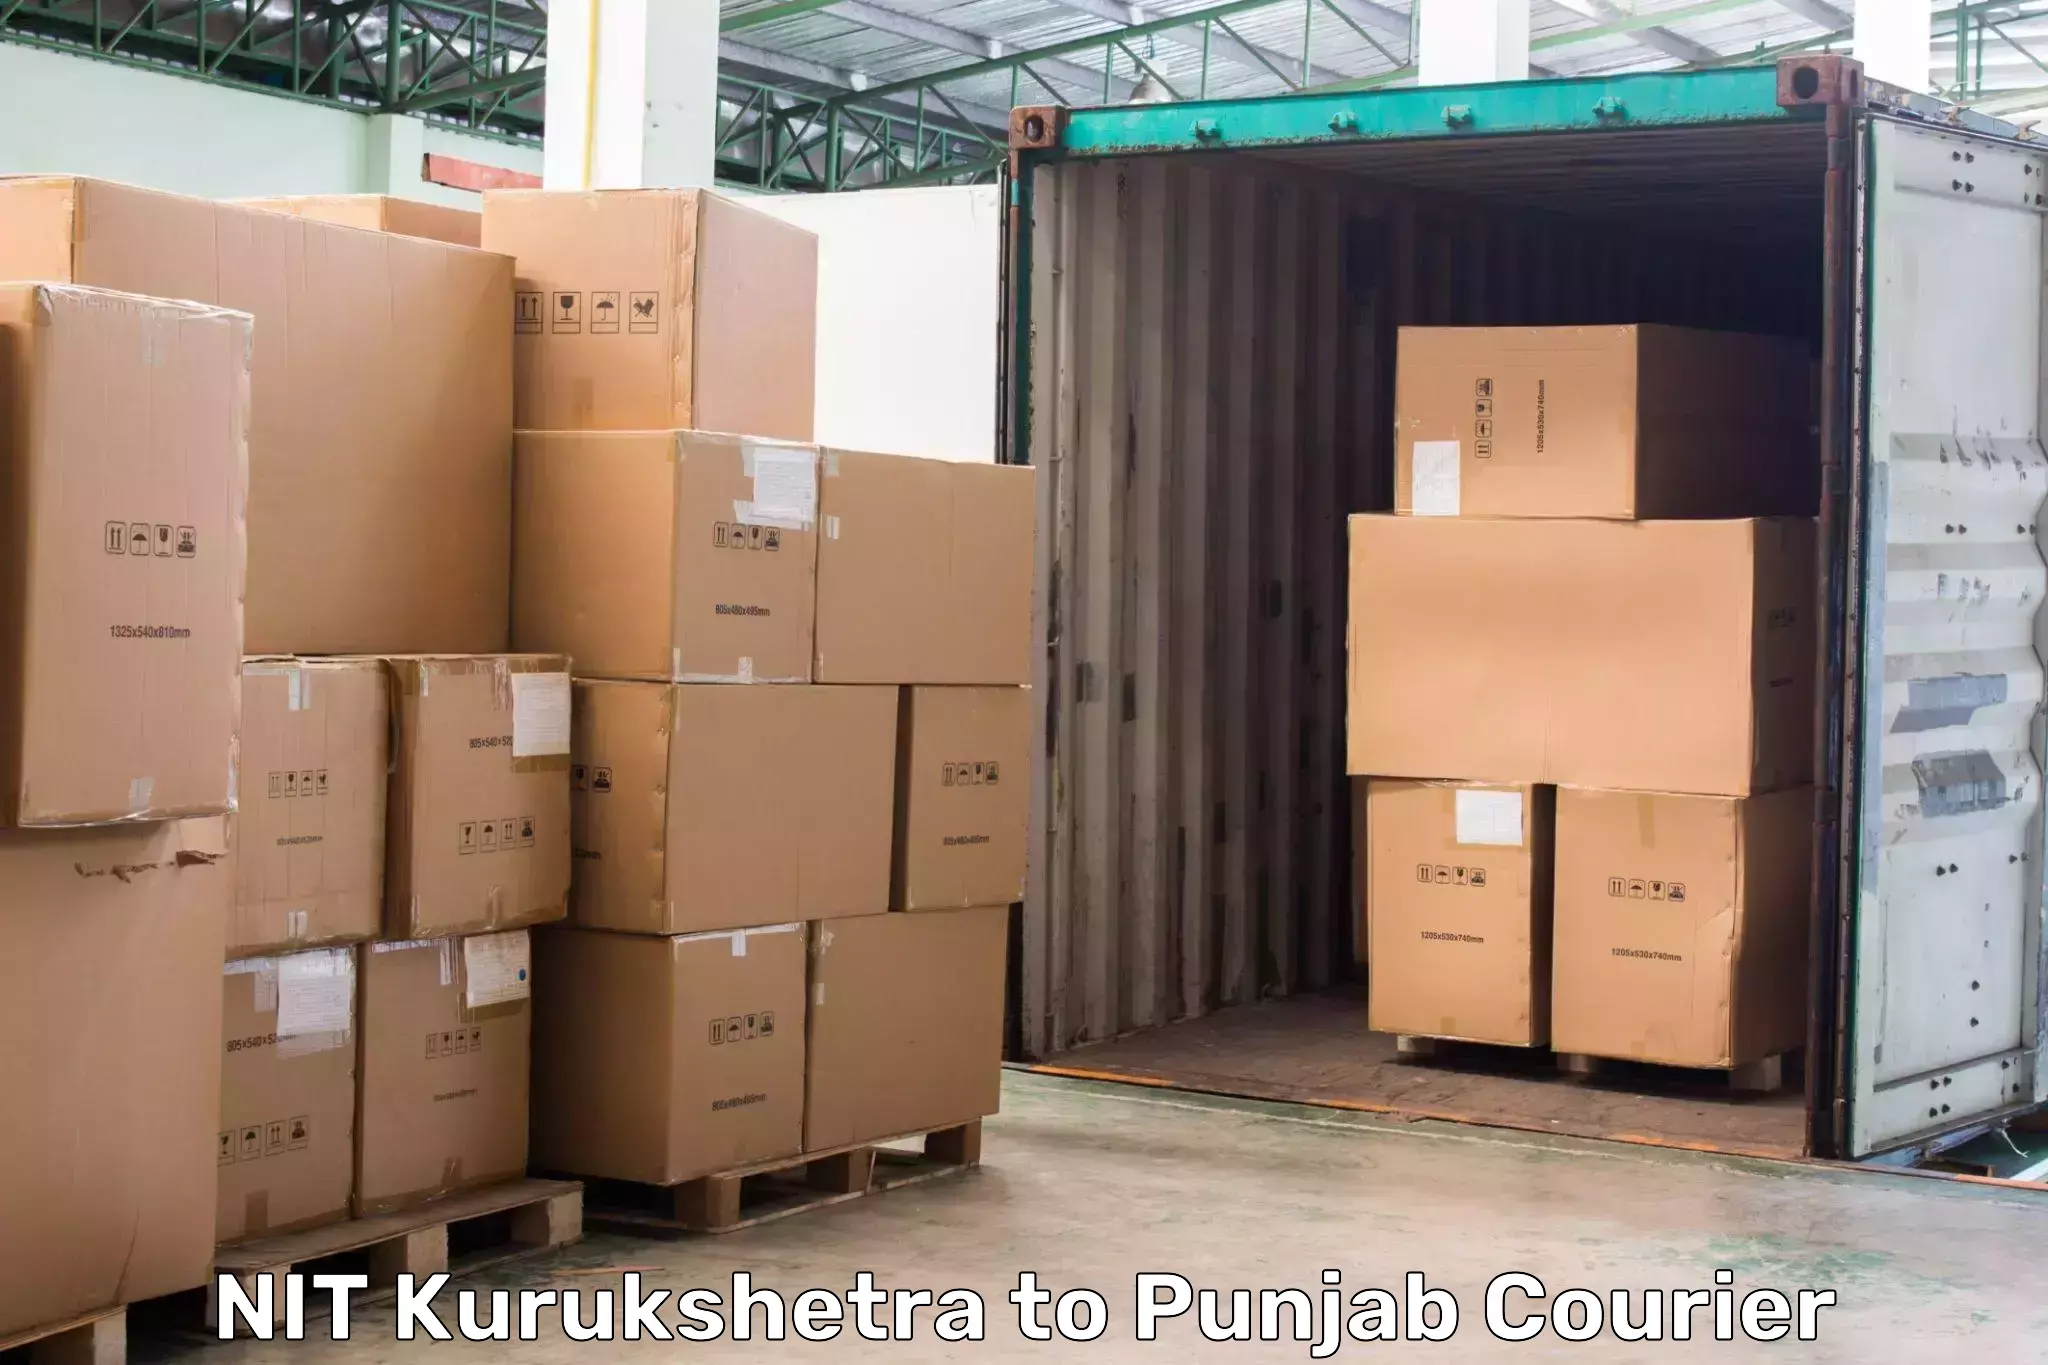 Express package transport NIT Kurukshetra to Amritsar